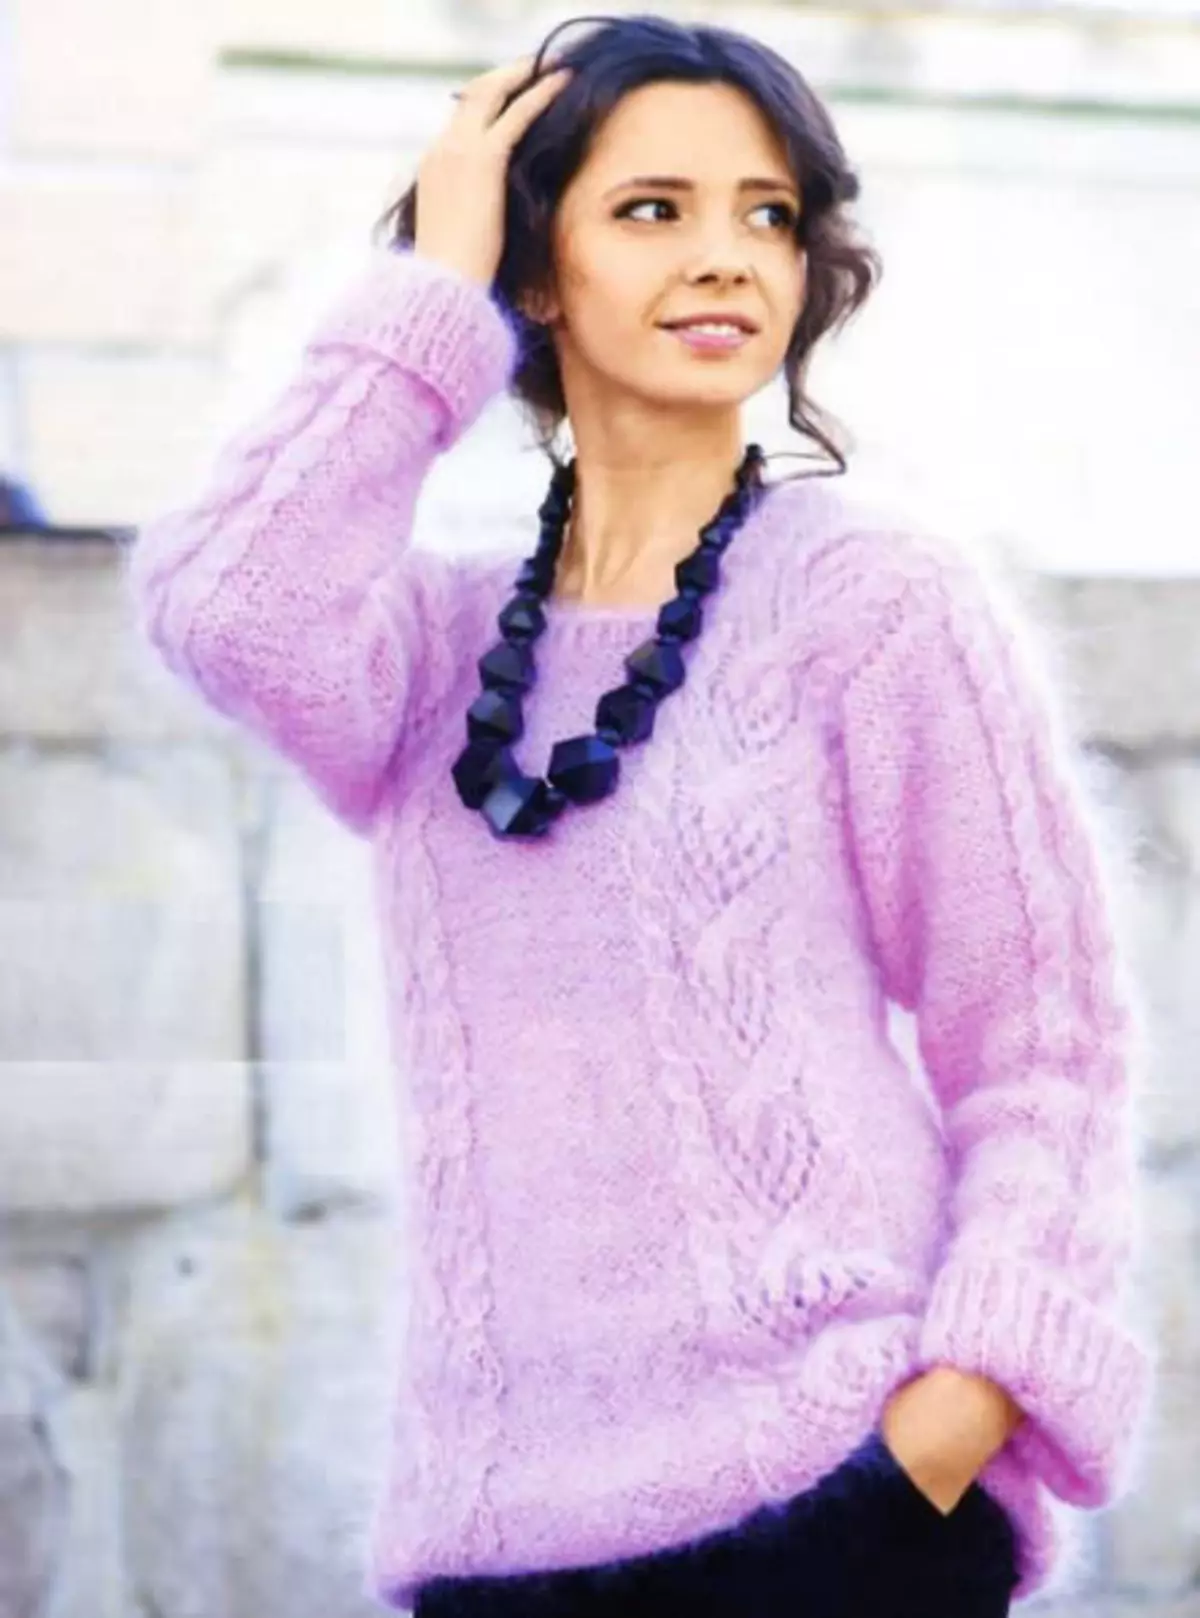 Damengestrickte Pullover mit Schemata und Fotos